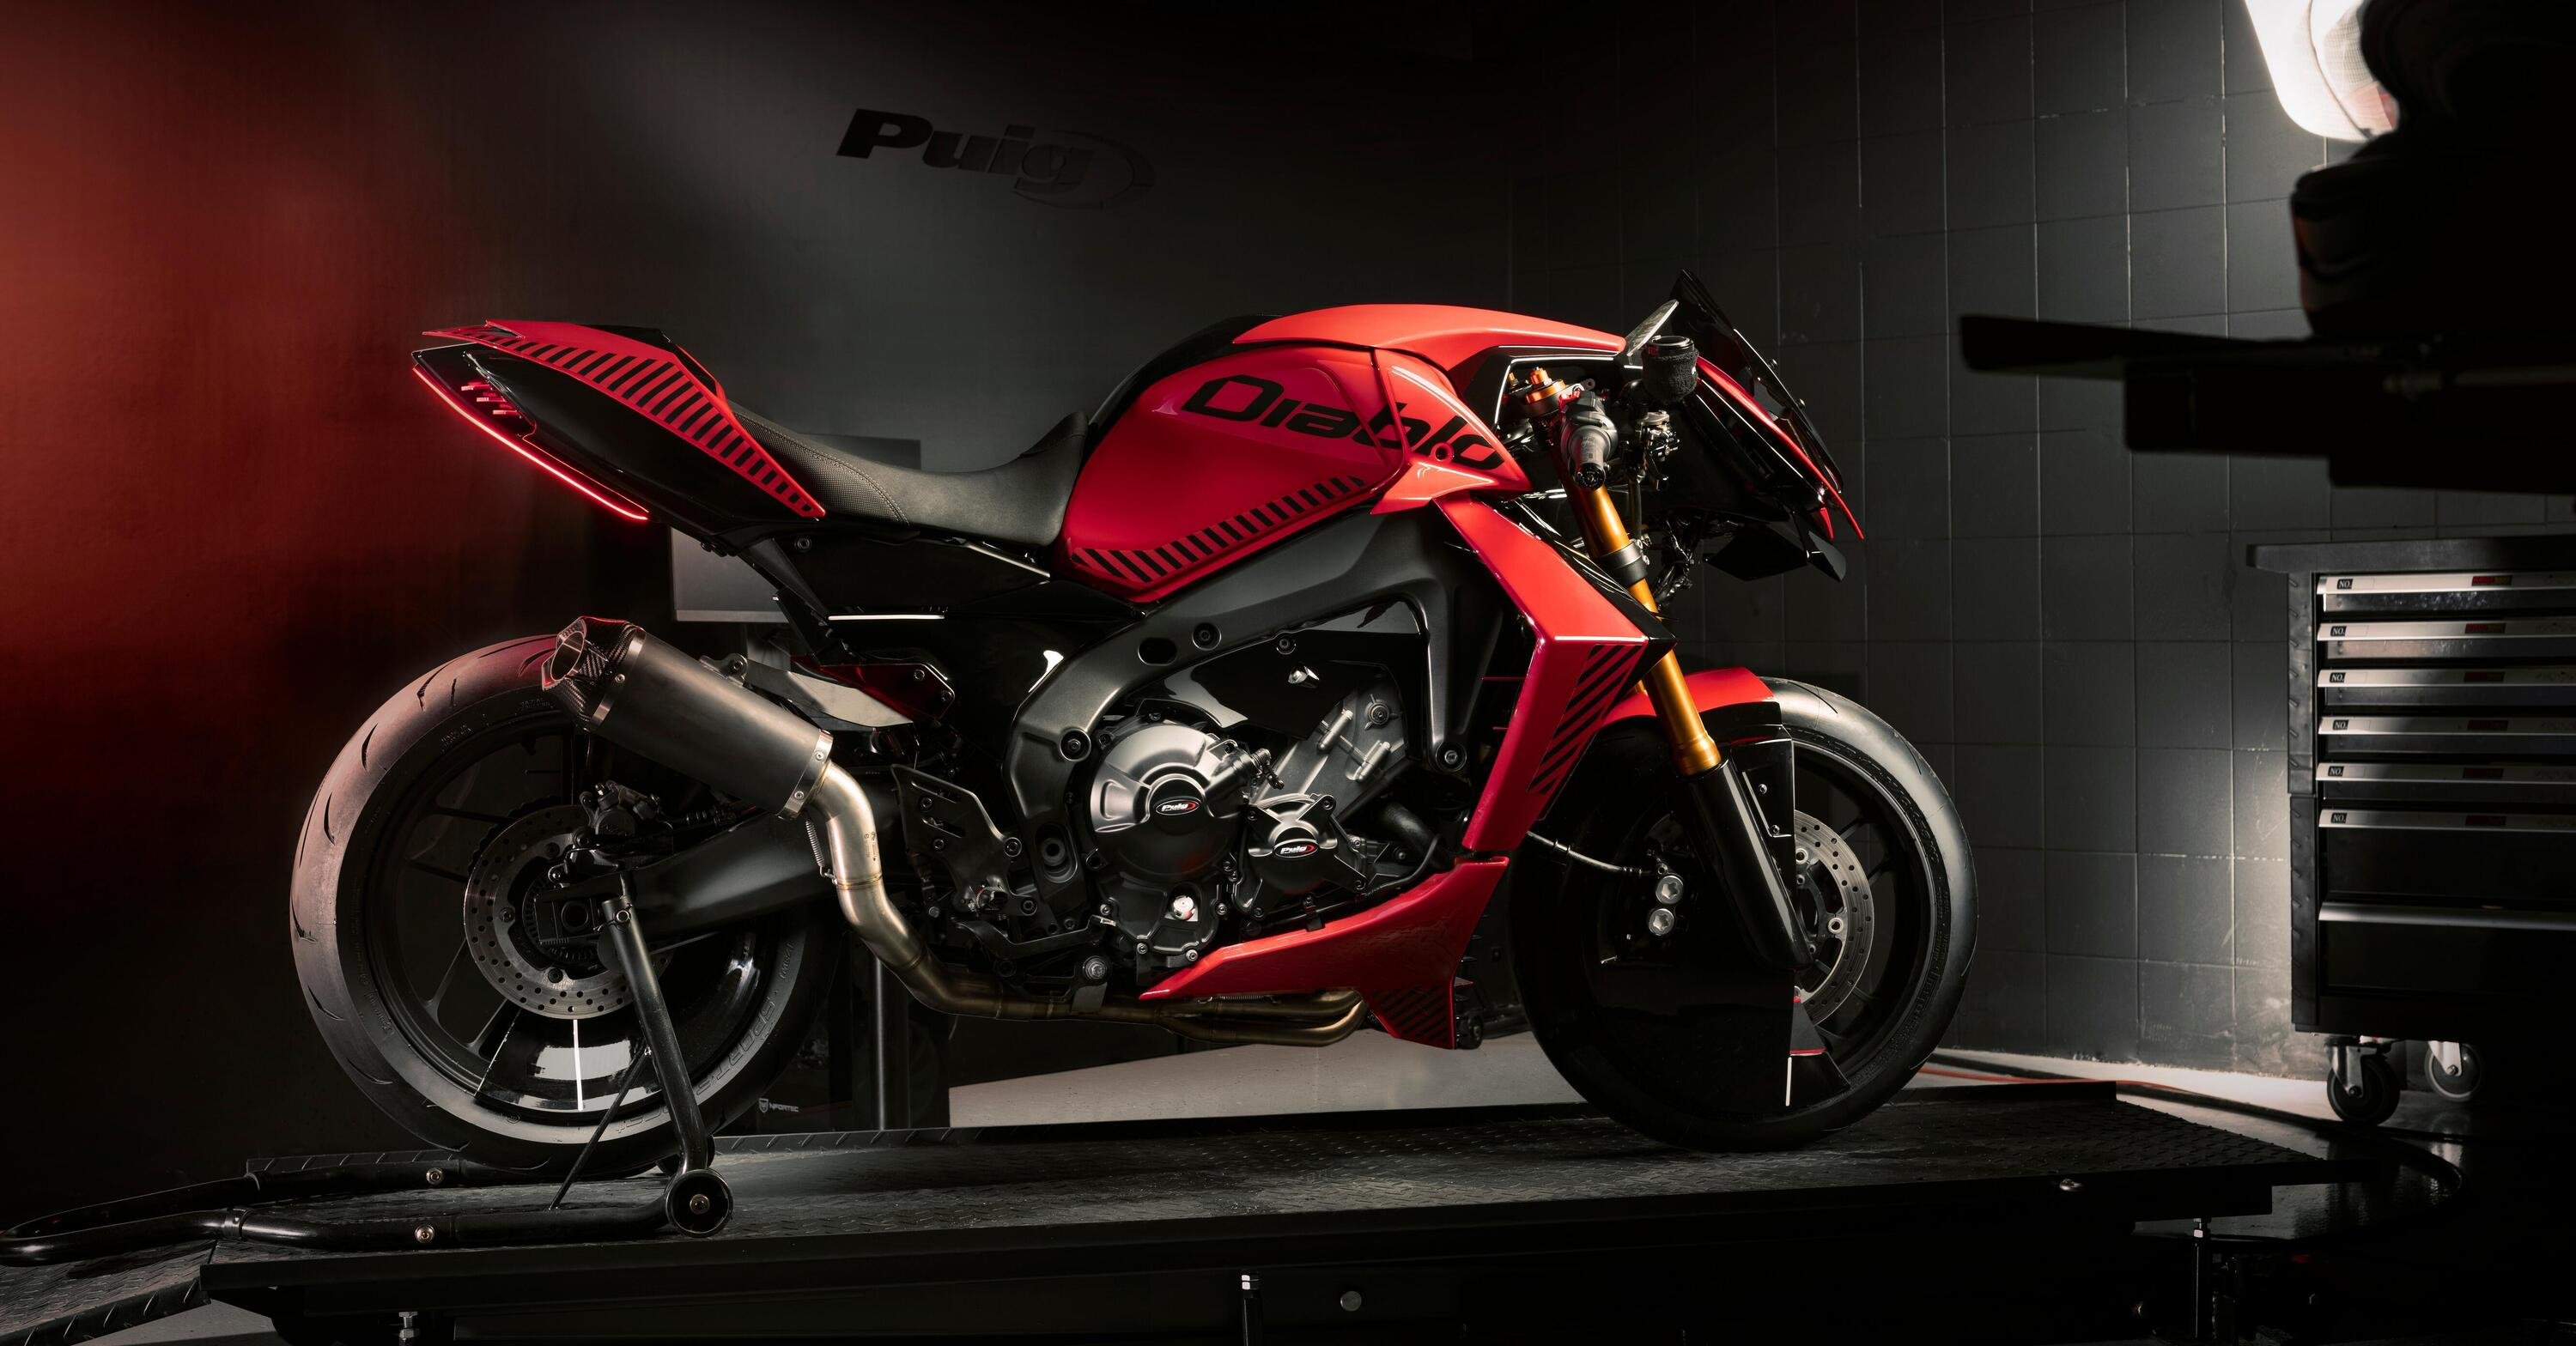 Diablo, da Puig una special su base Yamaha MT-09: mostra come saranno gli accessori moto del futuro